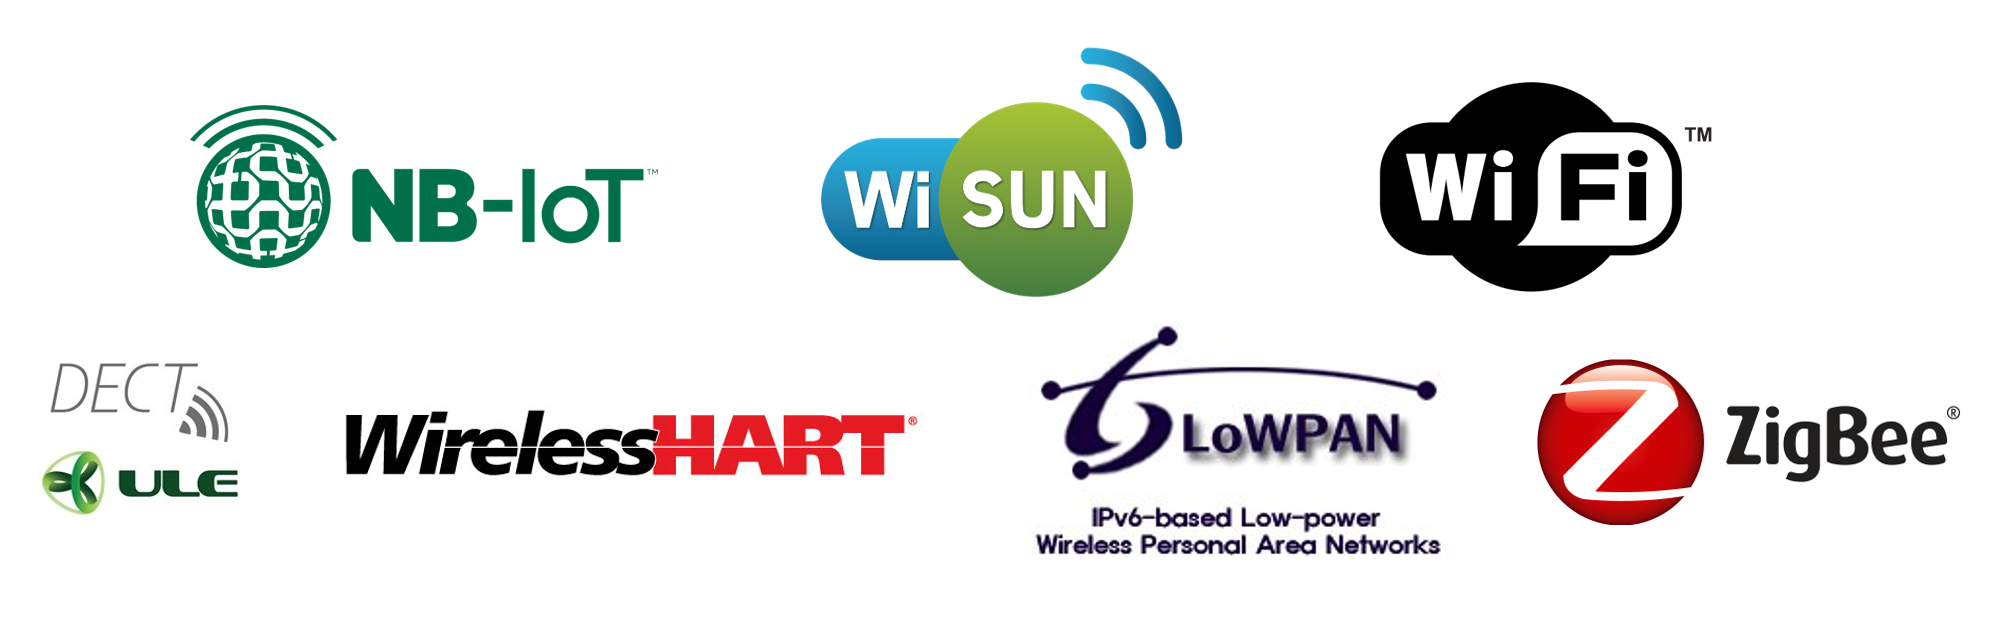 Logos NB-IoT, WiSUN, WiFi, DECUT ULE, WirelessHART, 6LoWPAN, ZigBee